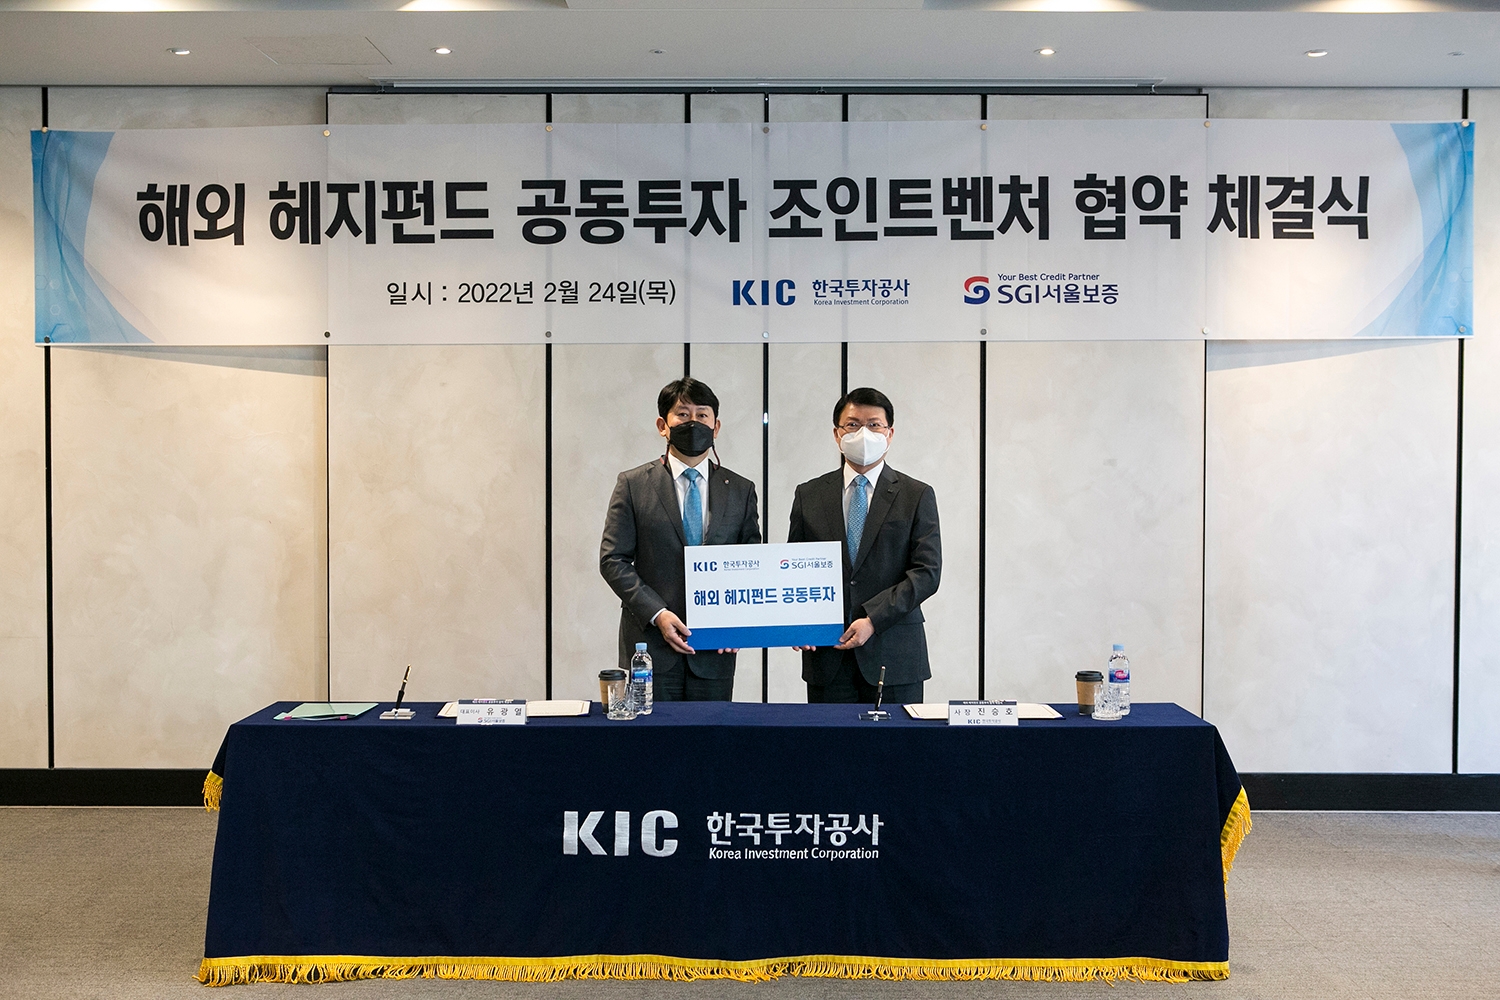 KIC는 24일 오전 서울보증보험과 헤지펀드 공동투자를 위한 업무협약을 체결했다. 협약식에 참석한 진승호 KIC 사장(오른쪽)과 서울보증보험 유광열 대표이사. / 사진제공=한국투자공사